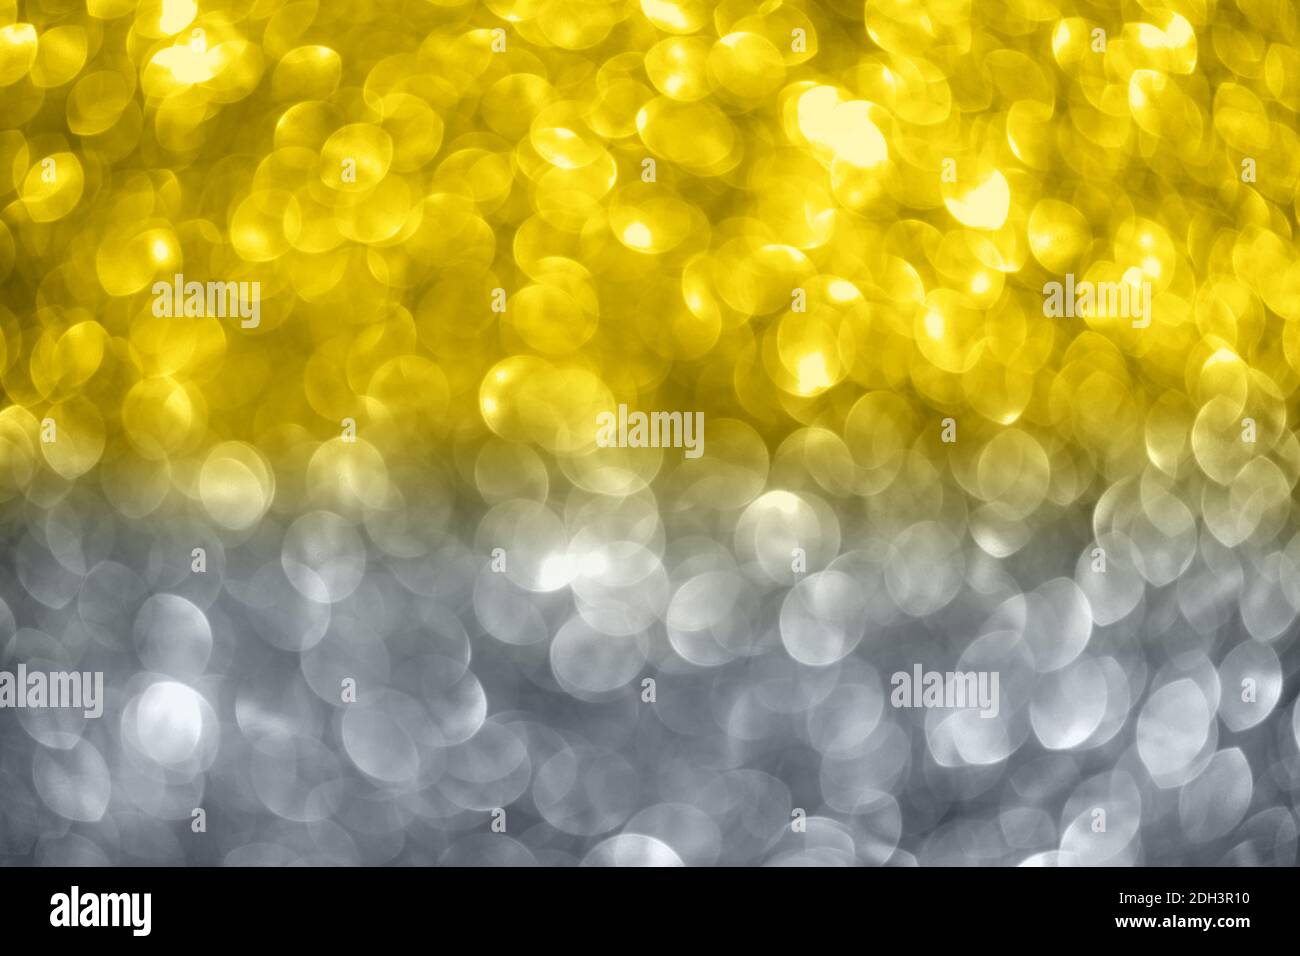 Sfondo bokeh giallo e grigio. Natale, Capodanno, festa, celebrazione concetto. Colore illuminante. Foto Stock